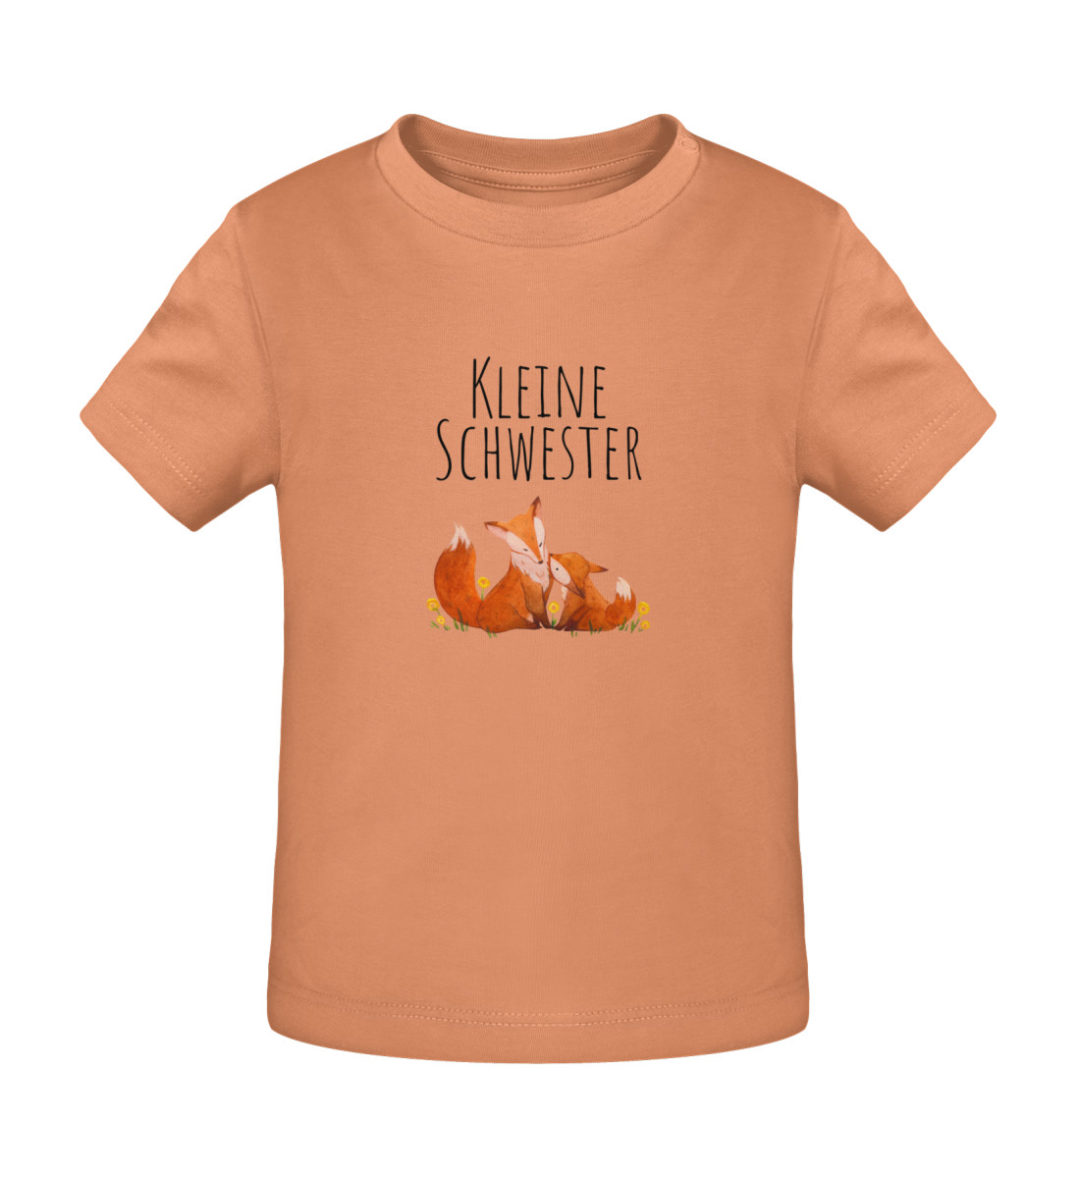 Kleine Schwester - Baby Creator T-Shirt ST/ST-7101